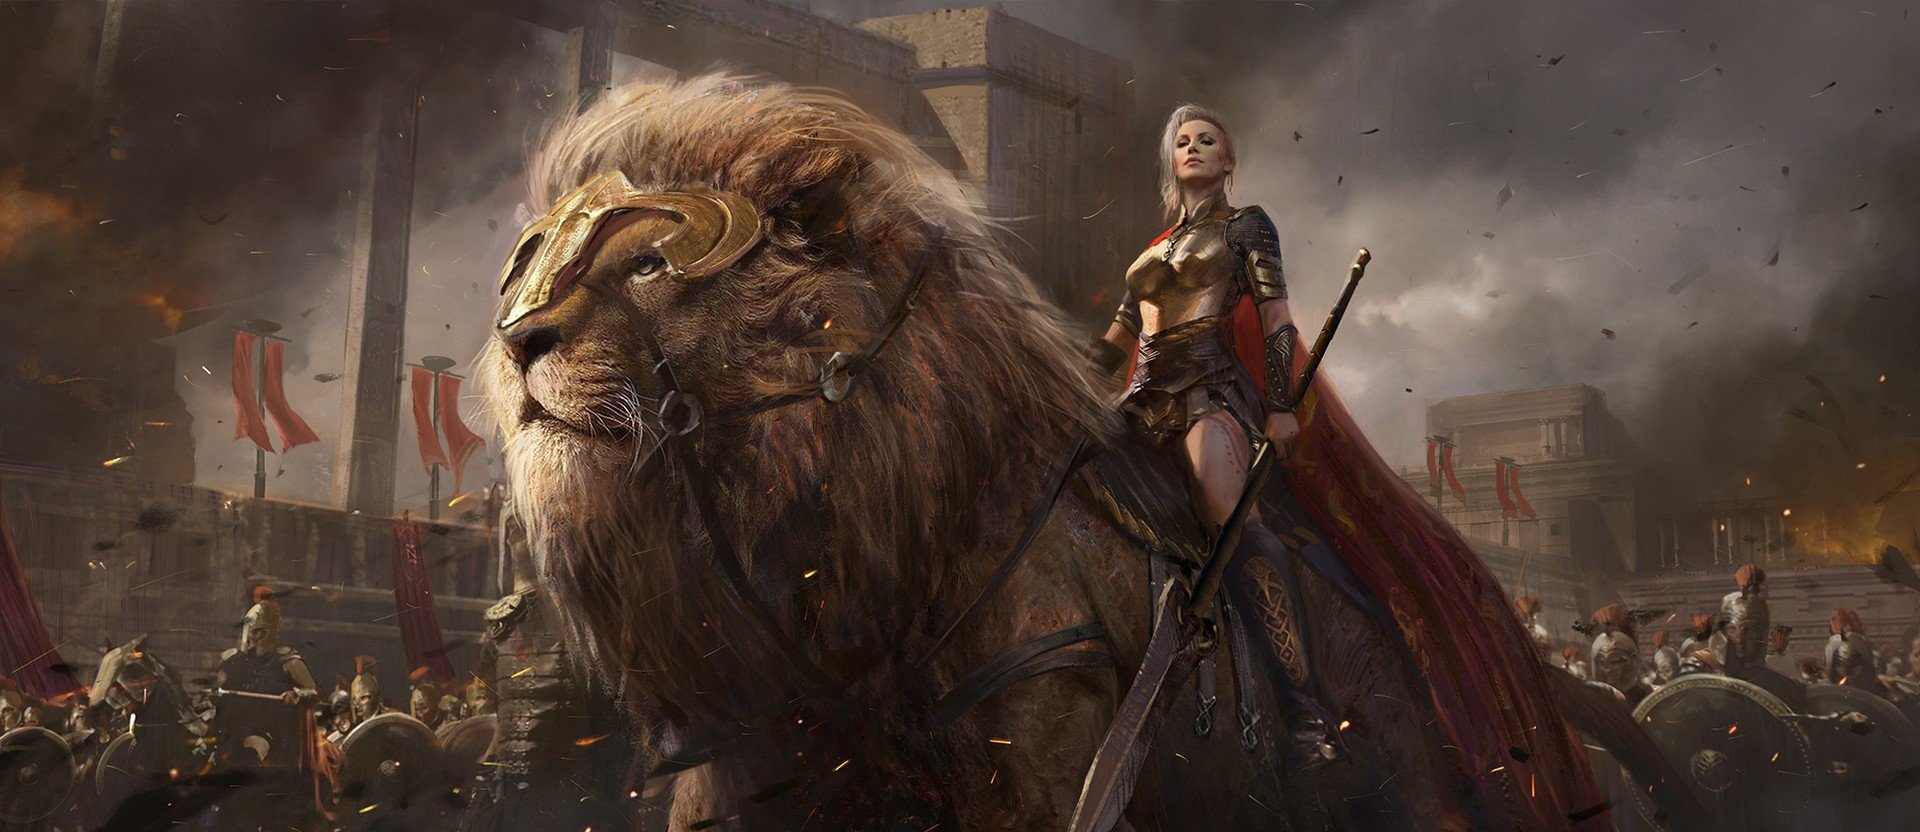 warrior, Armor, Fantasy art, Lion Wallpaper